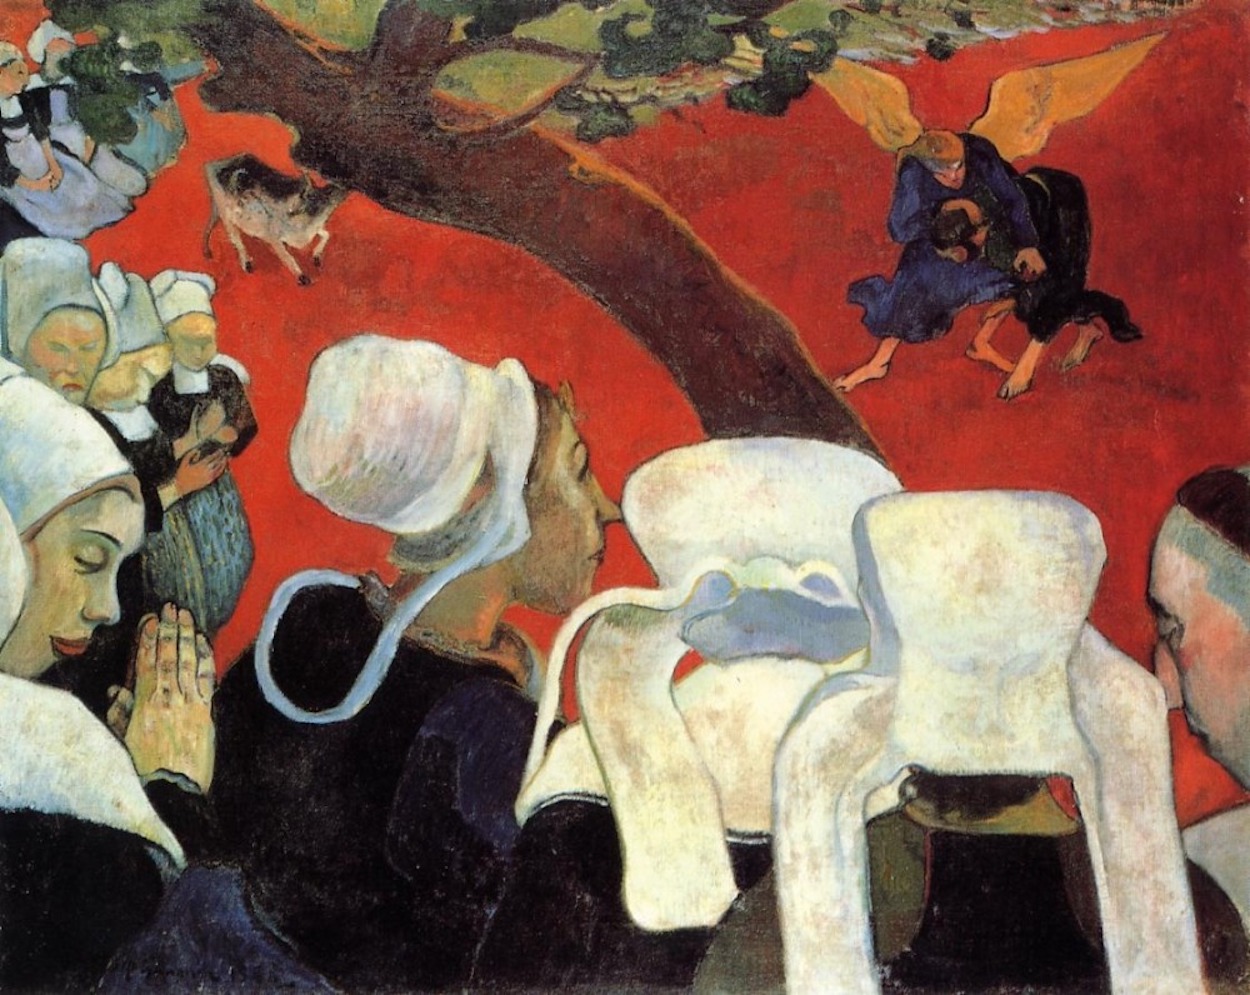 Die Vision nach der Predigt by Paul Gauguin - 1888 - 74,4 x 93,1 cm National Galleries of Scotland